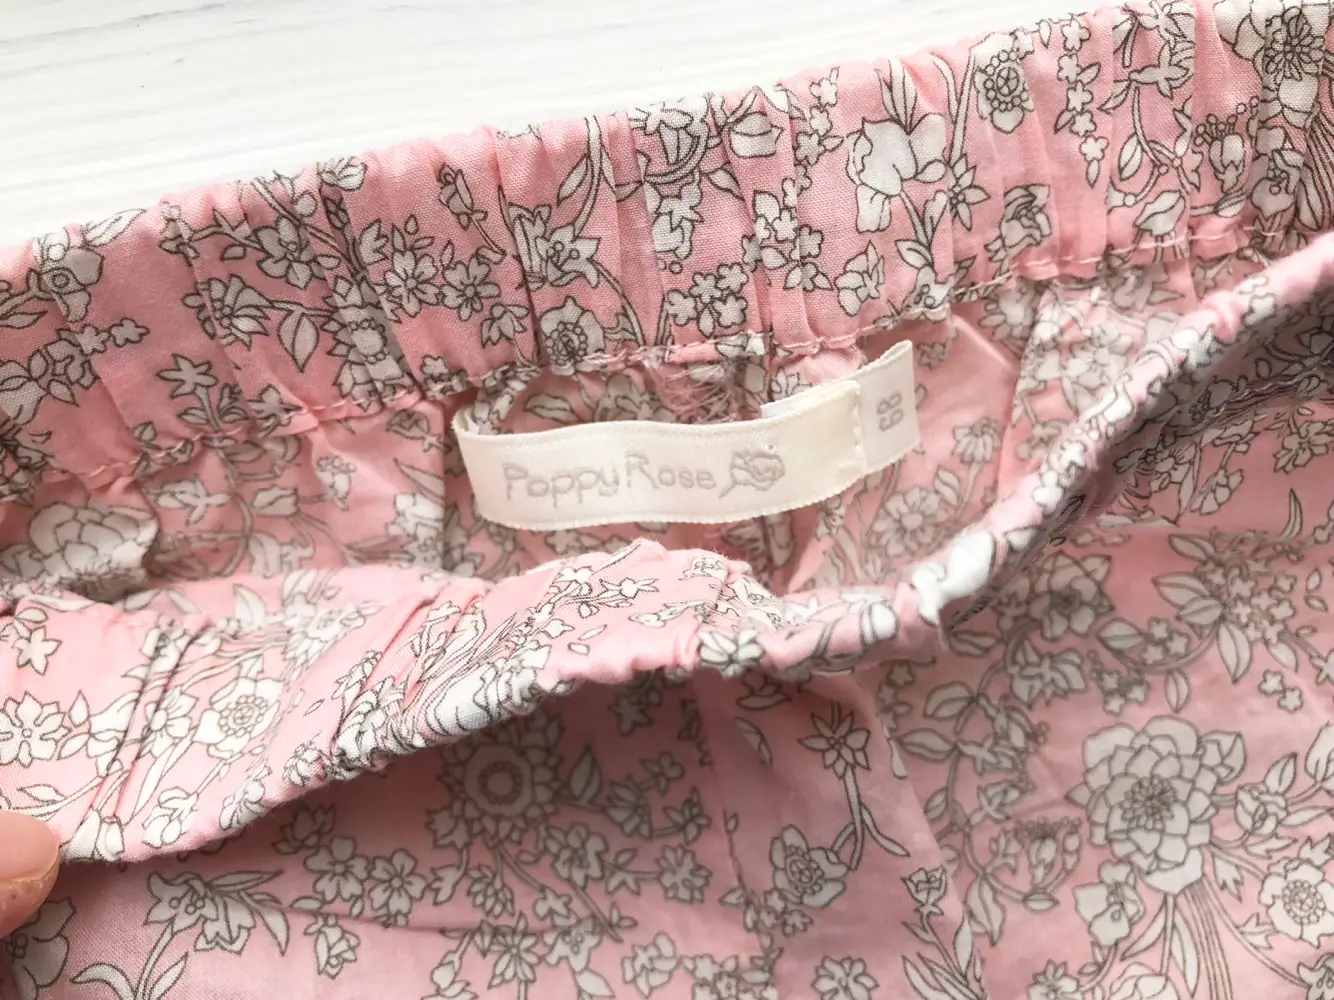 Køb Poppy Rose Sengetøj i liberty Anne Sophie på Reshopper · Shop secondhand til børn, mor og